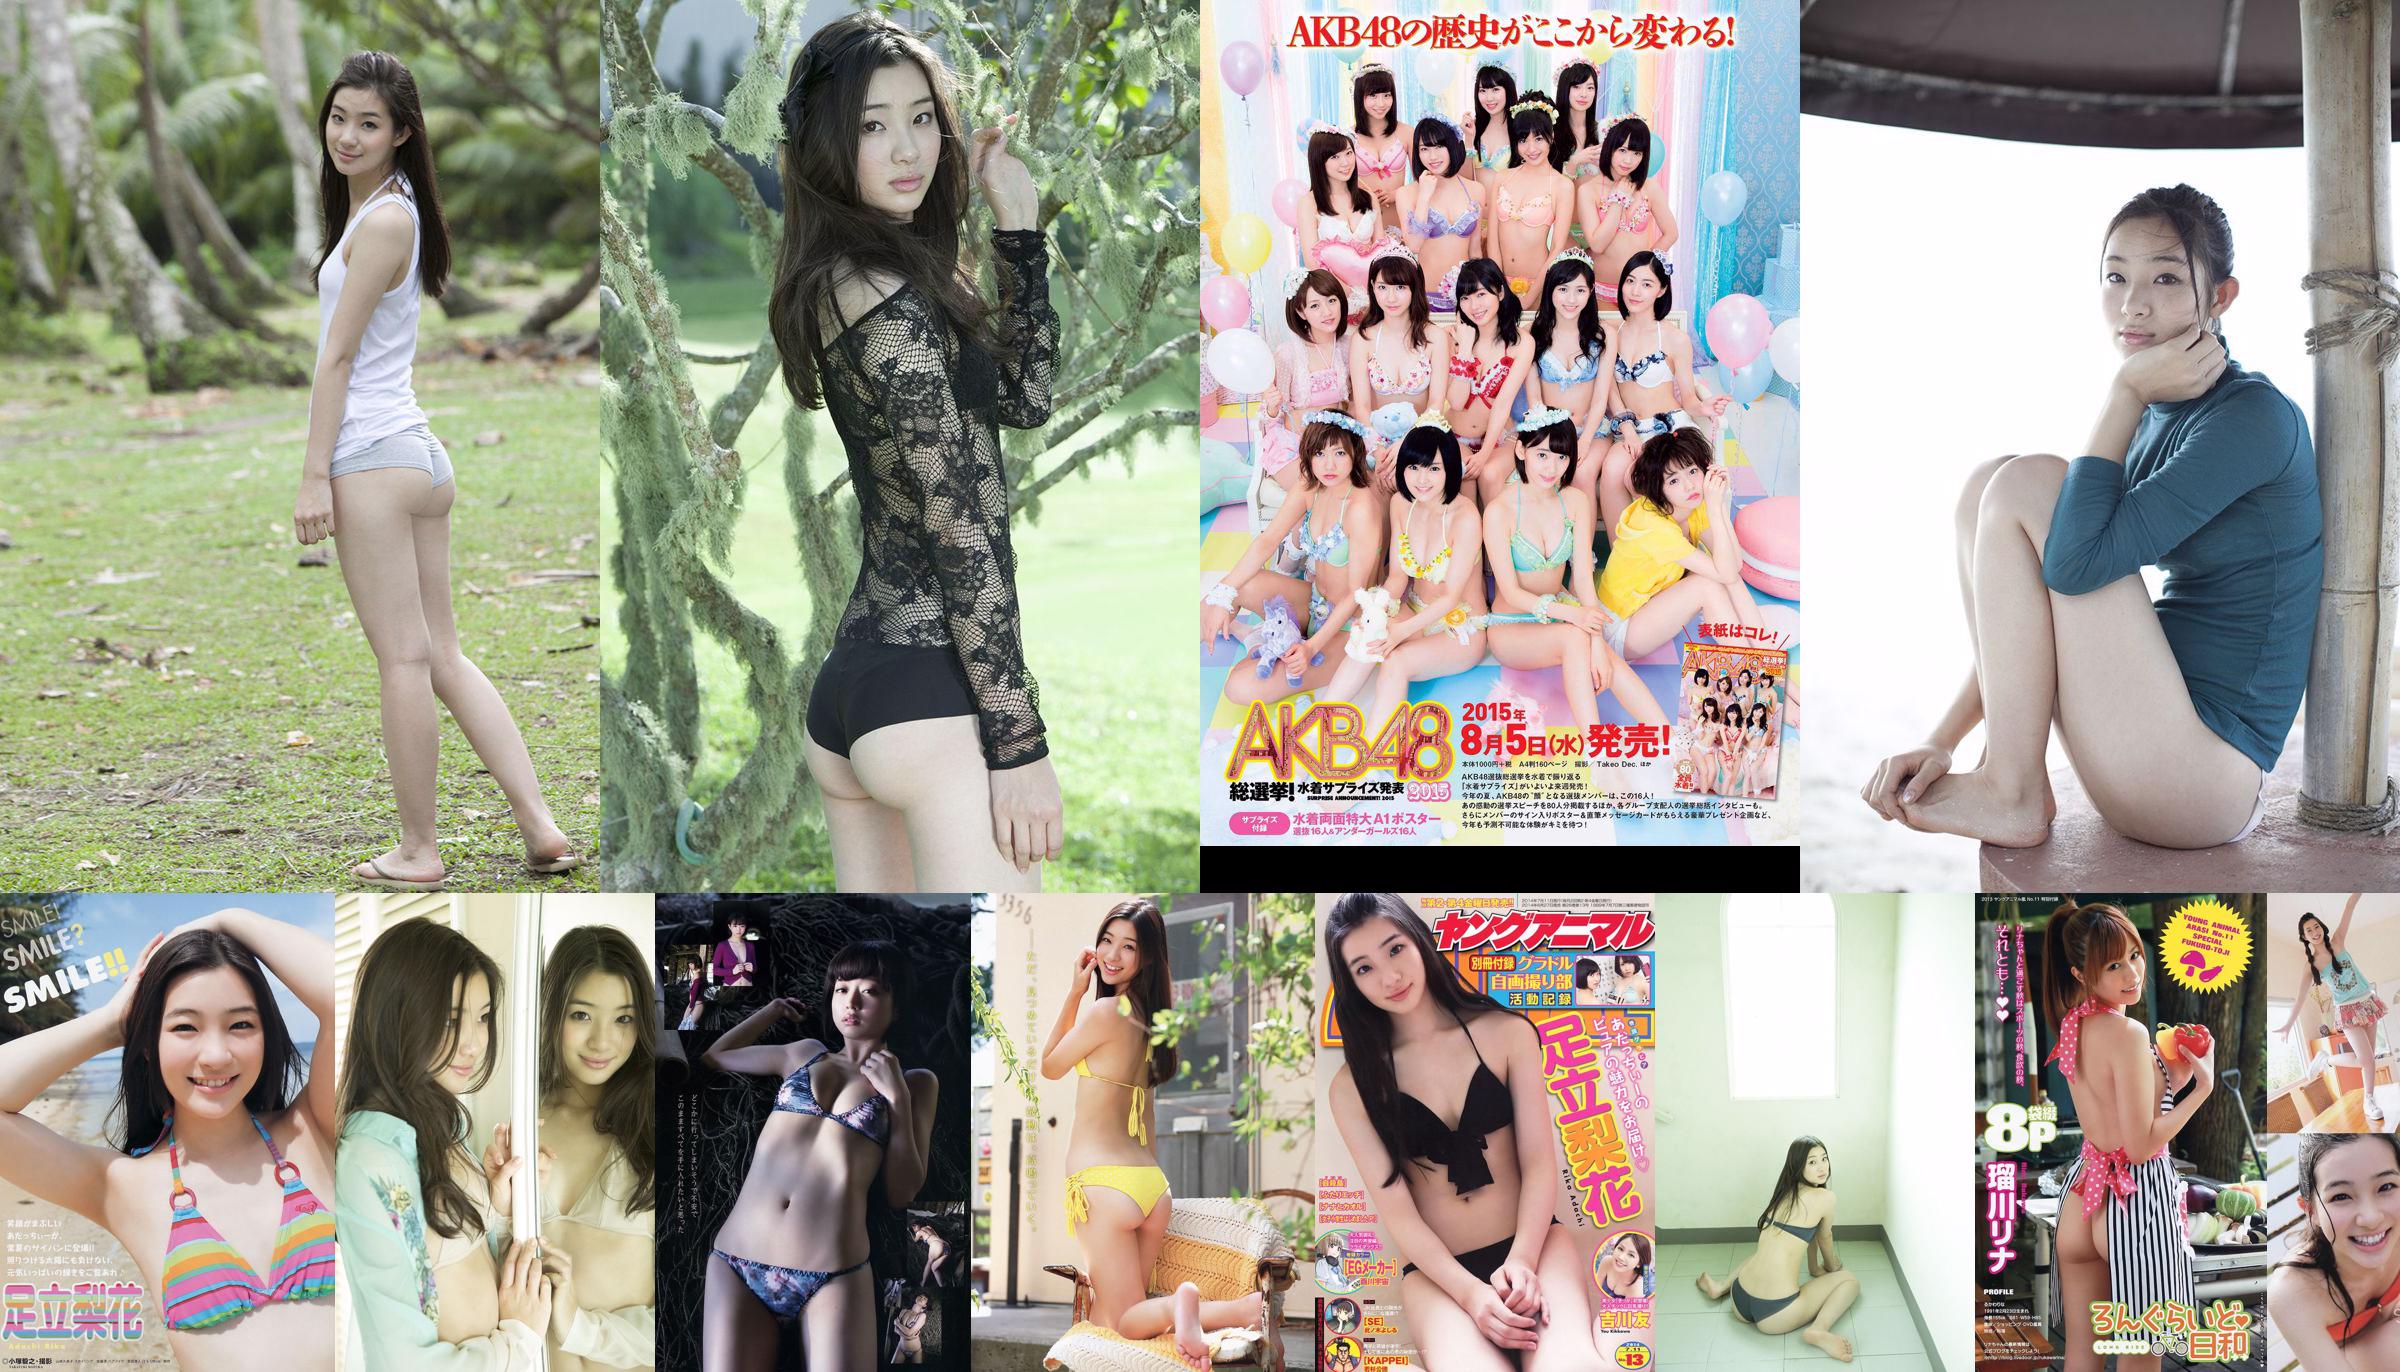 Rika Adachi Yuko Shimizu Nozomi Tachibana Asuka Kishi Rio Uchida [Playboy hebdomadaire] 2015 No.32 Photo Toshi No.45b0c4 Page 6